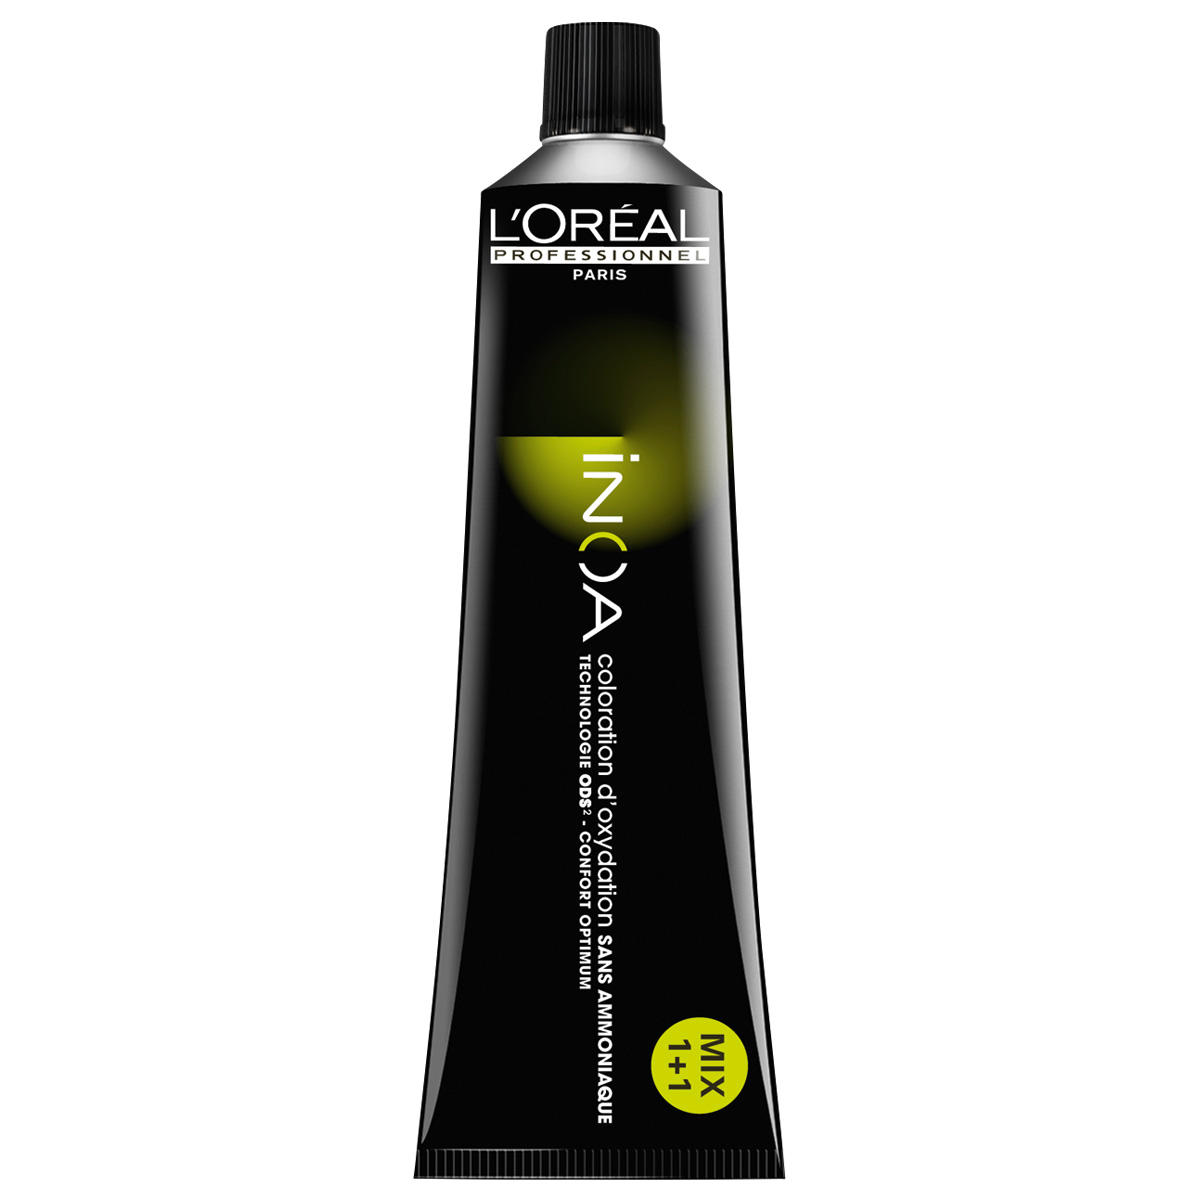 L'Oréal Professionnel Paris Coloration 10 blond platine, Tube 60 ml